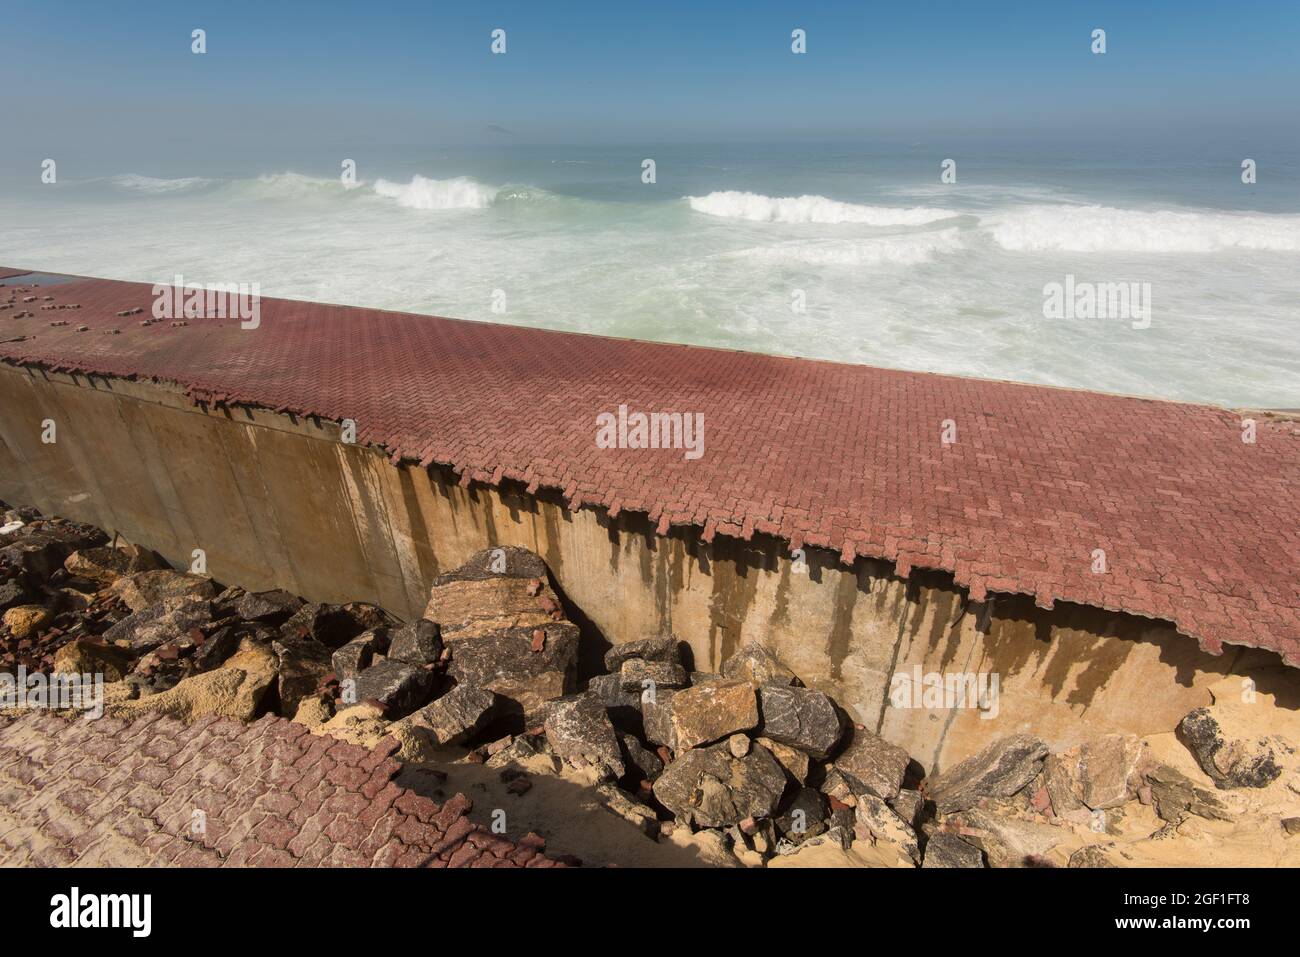 Promenade of Sao Conrado in Rio de Janeiro is Ruined by Strong Ocean Waves Stock Photo